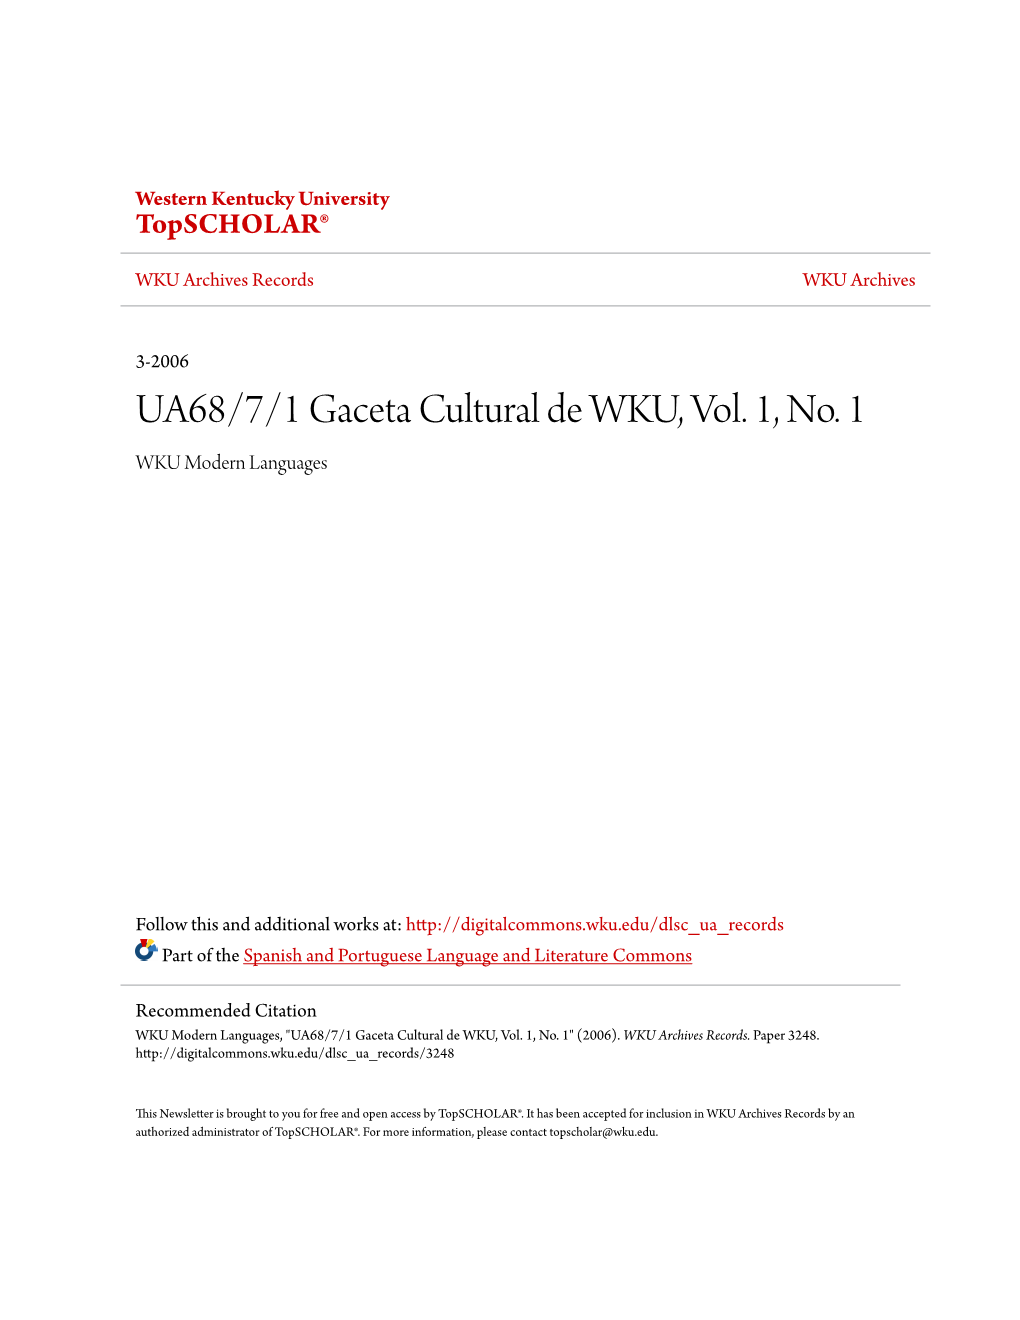 UA68/7/1 Gaceta Cultural De WKU, Vol. 1, No. 1 WKU Modern Languages